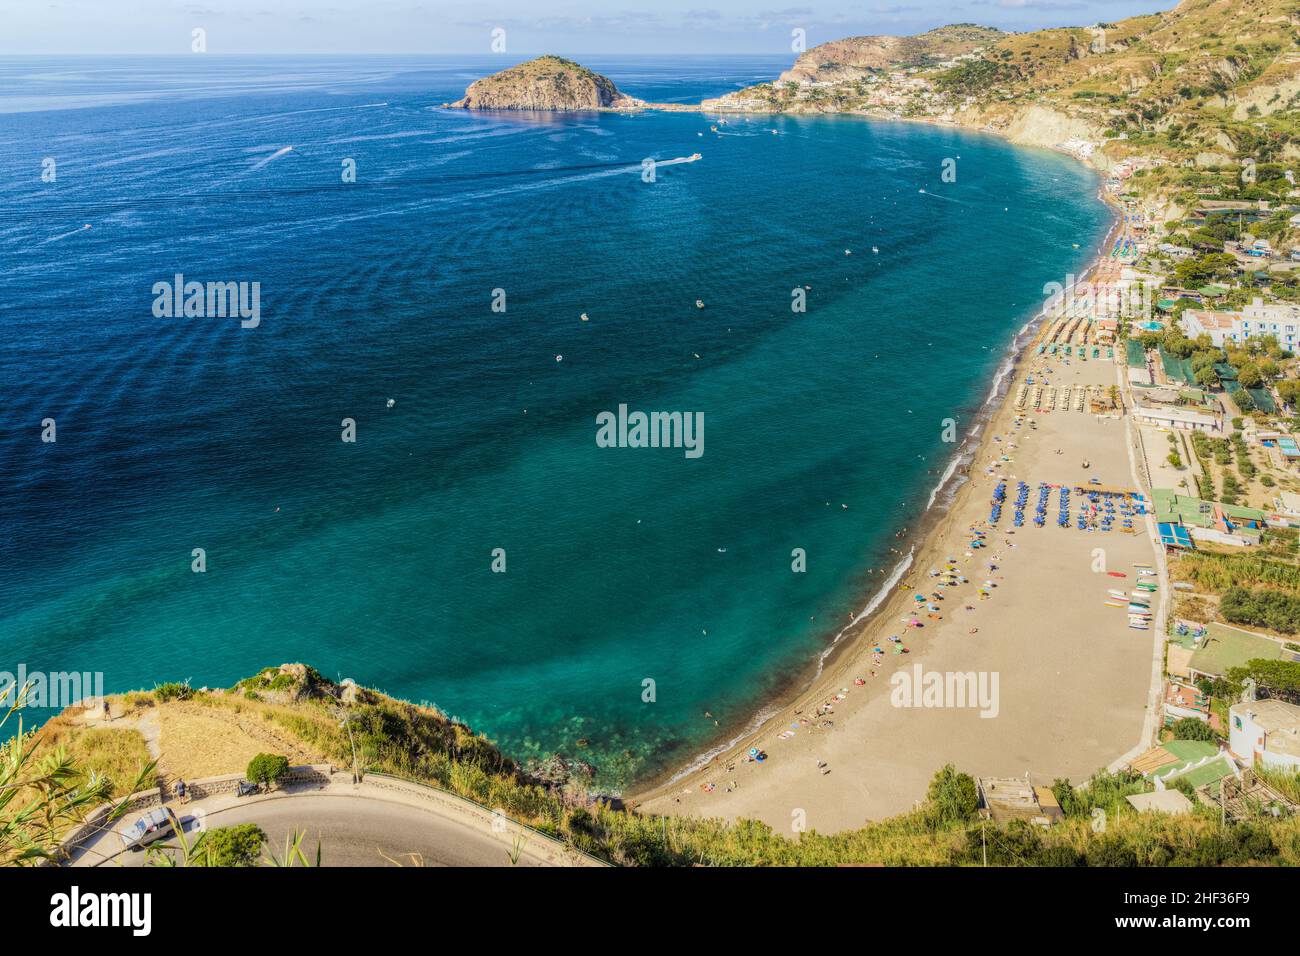 Belle vue panoramique sur la plage de Maronti, l'une des plages les plus populaires de l'île d'Ischia, en Italie Banque D'Images